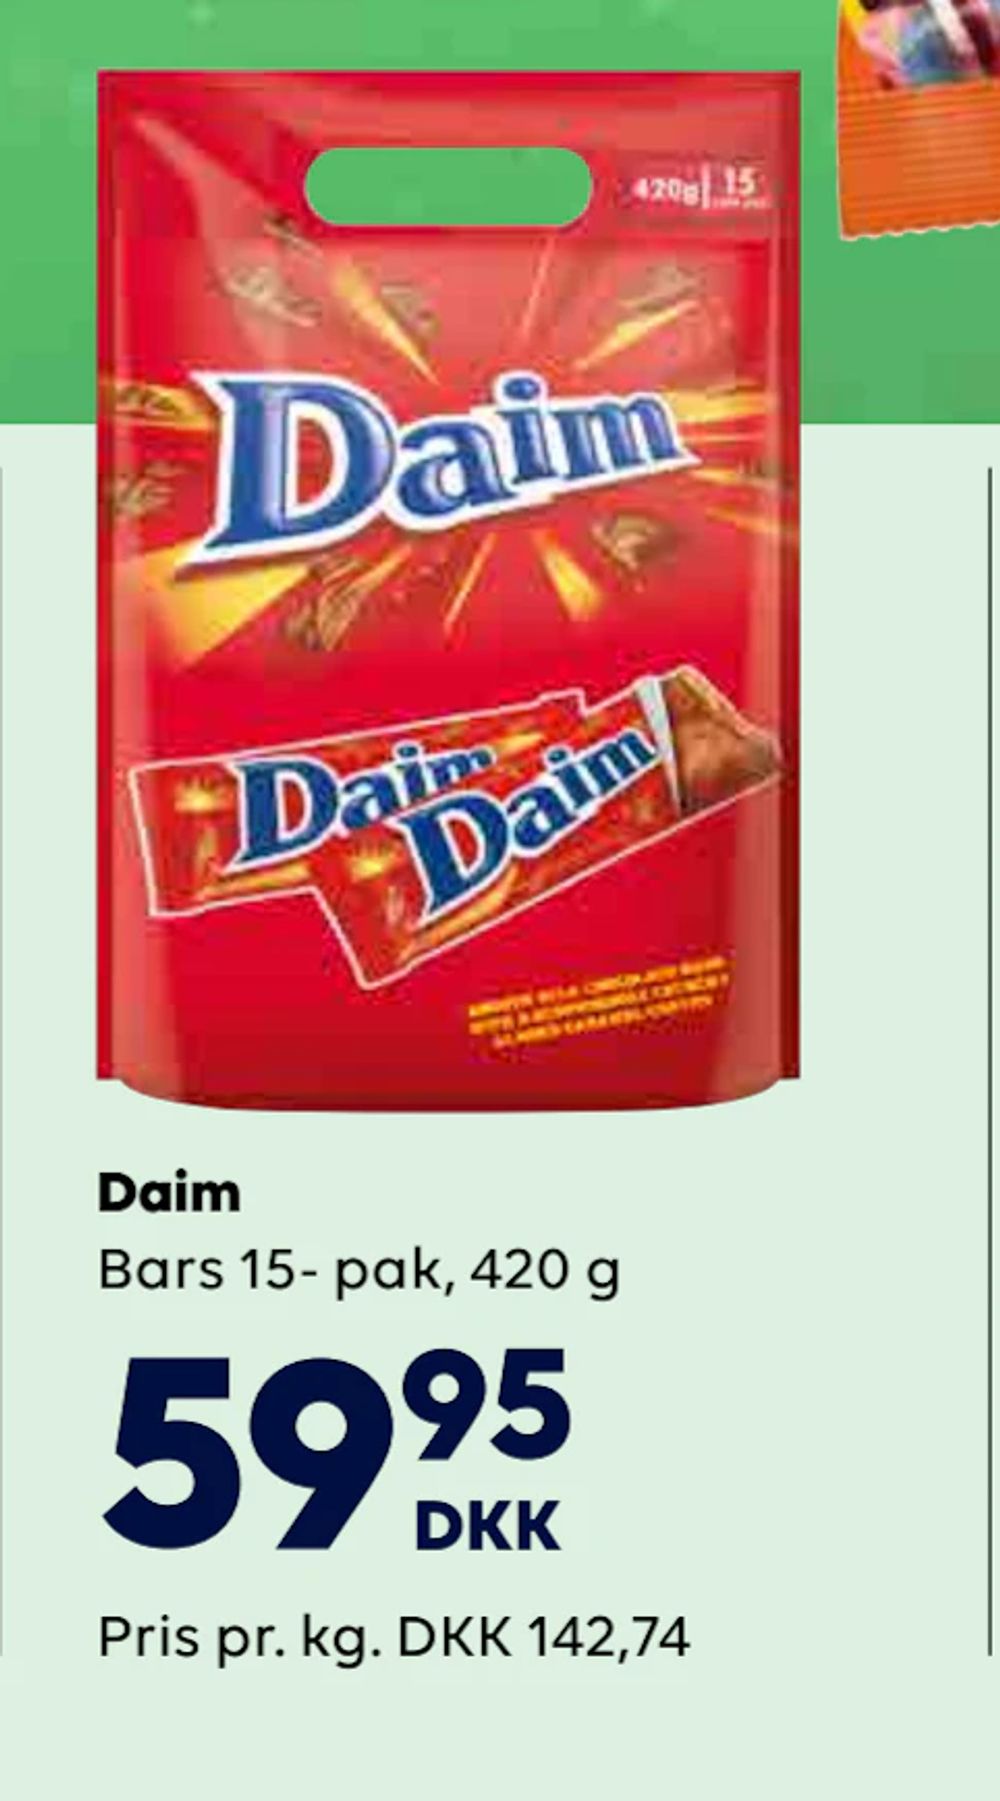 Tilbud på Daim fra BorderShop til 59,95 kr.